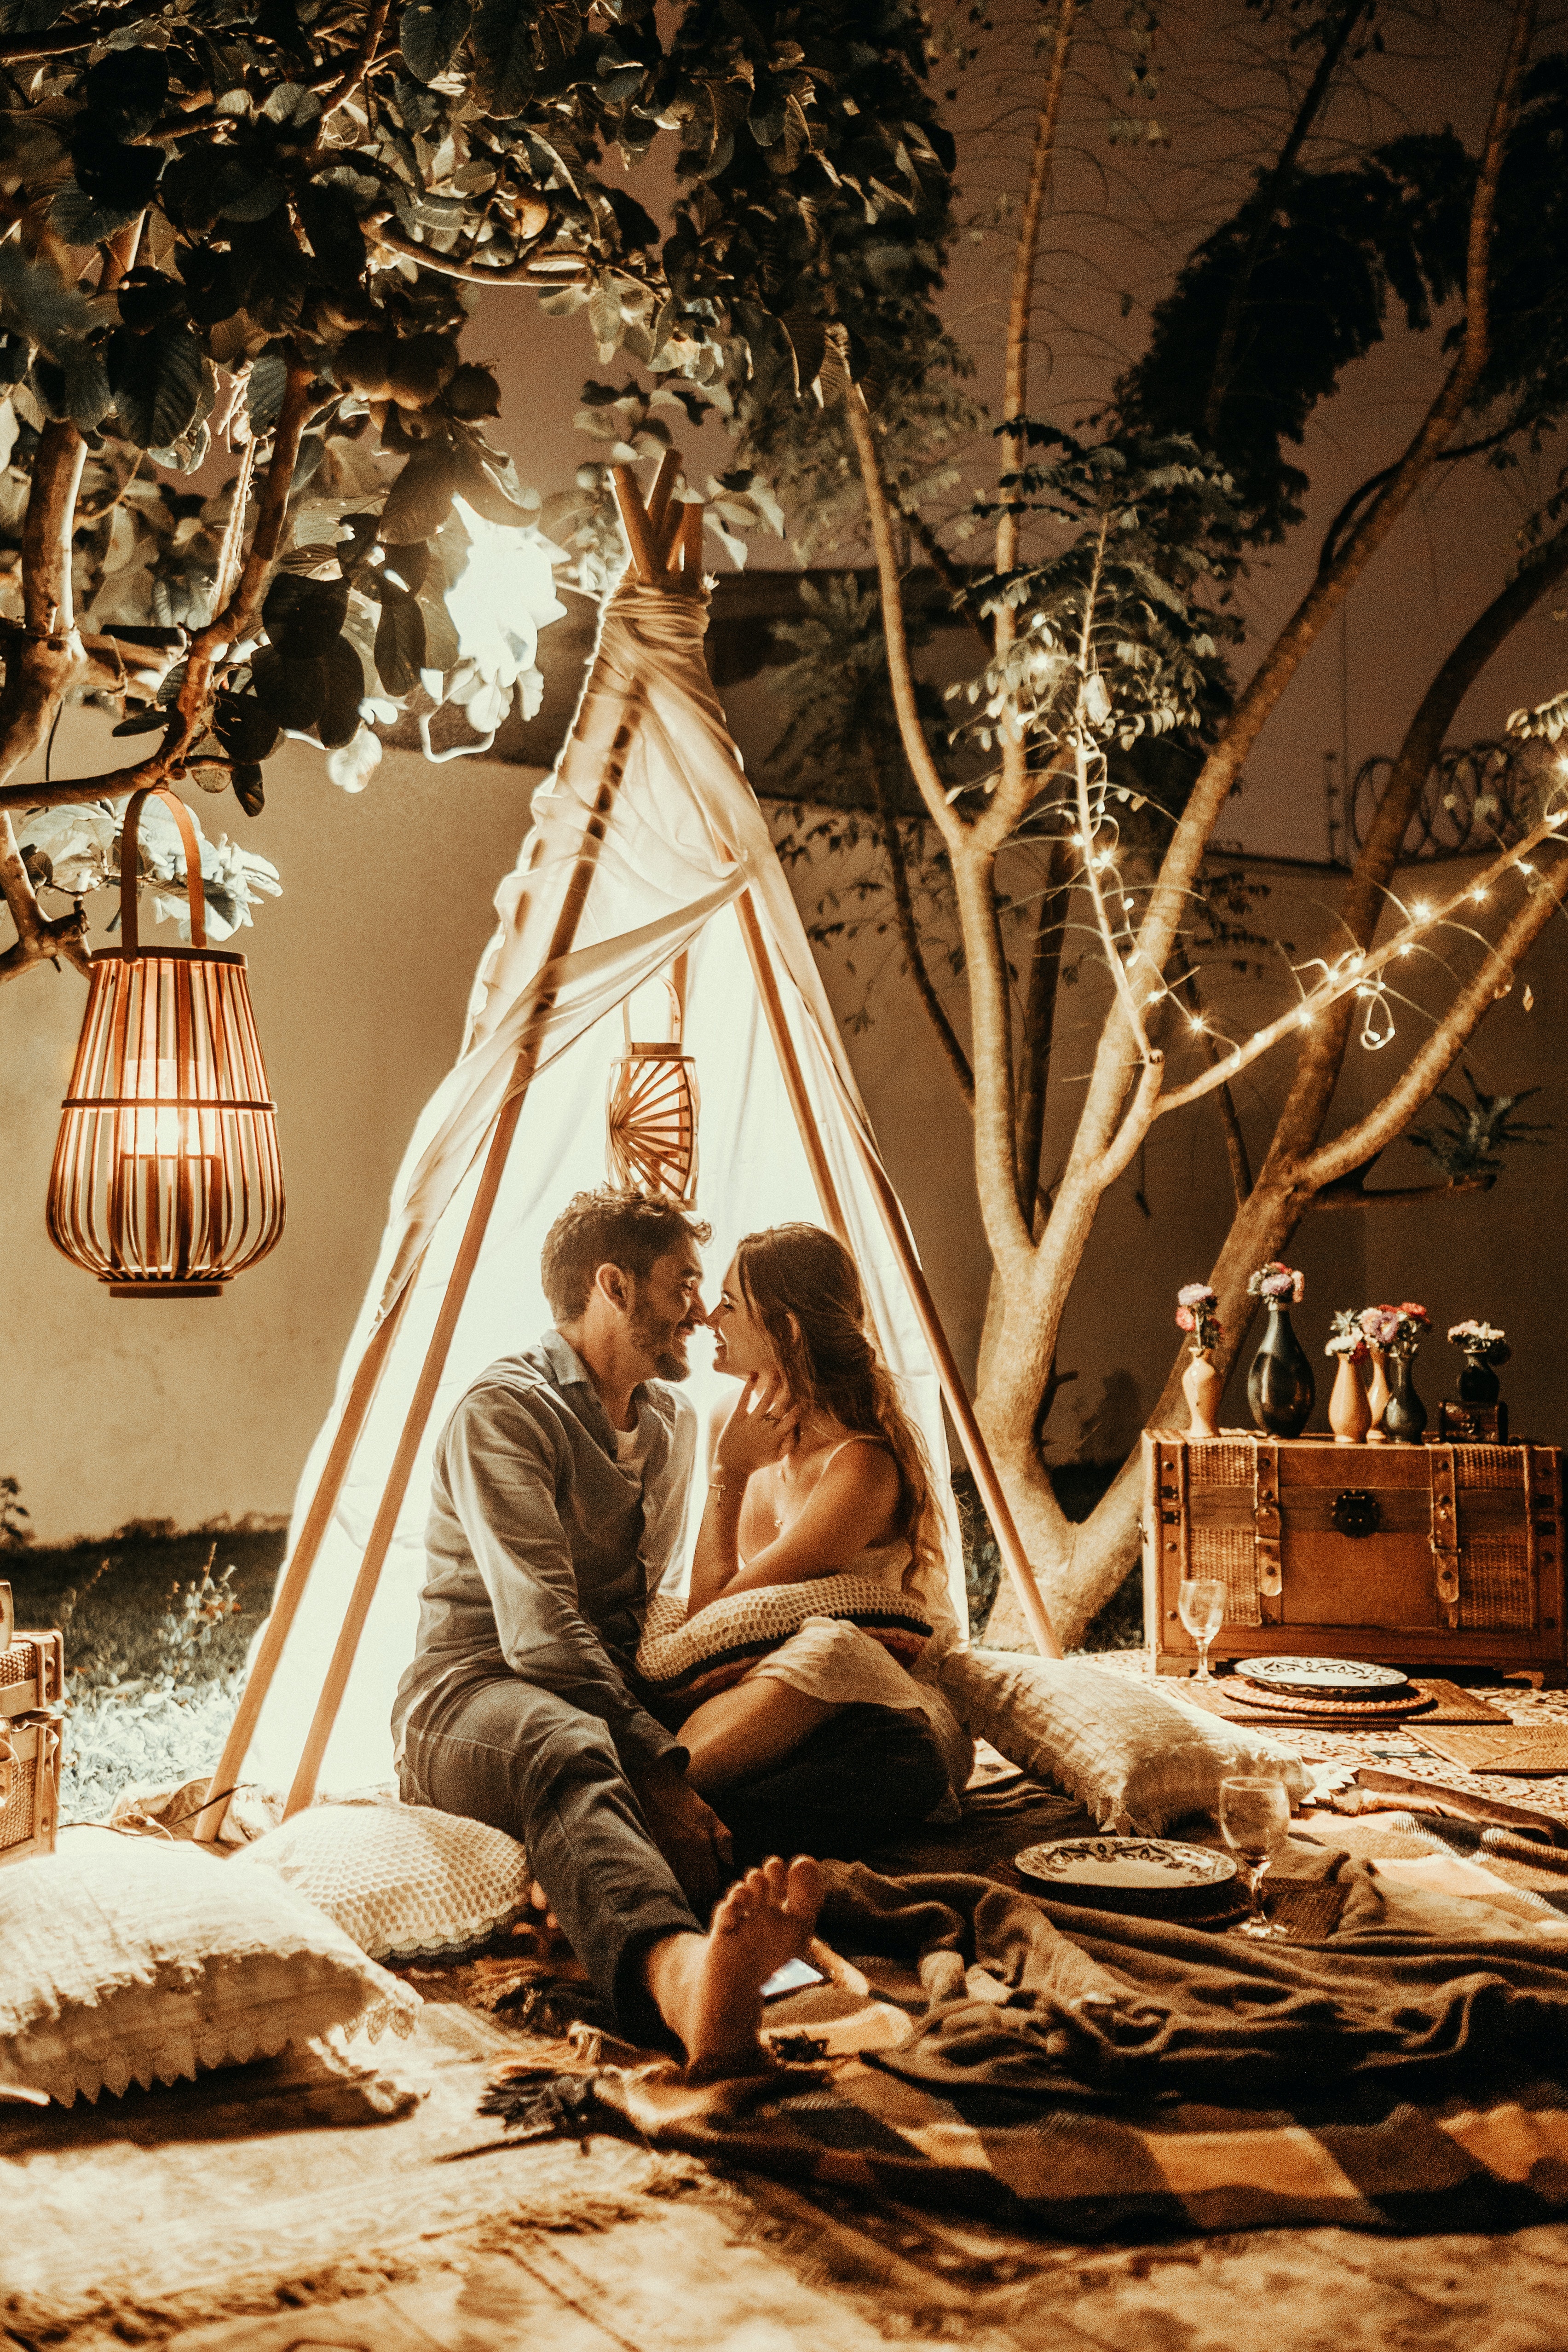 A photo of a romantic couple inside a tent | Source: Unsplash